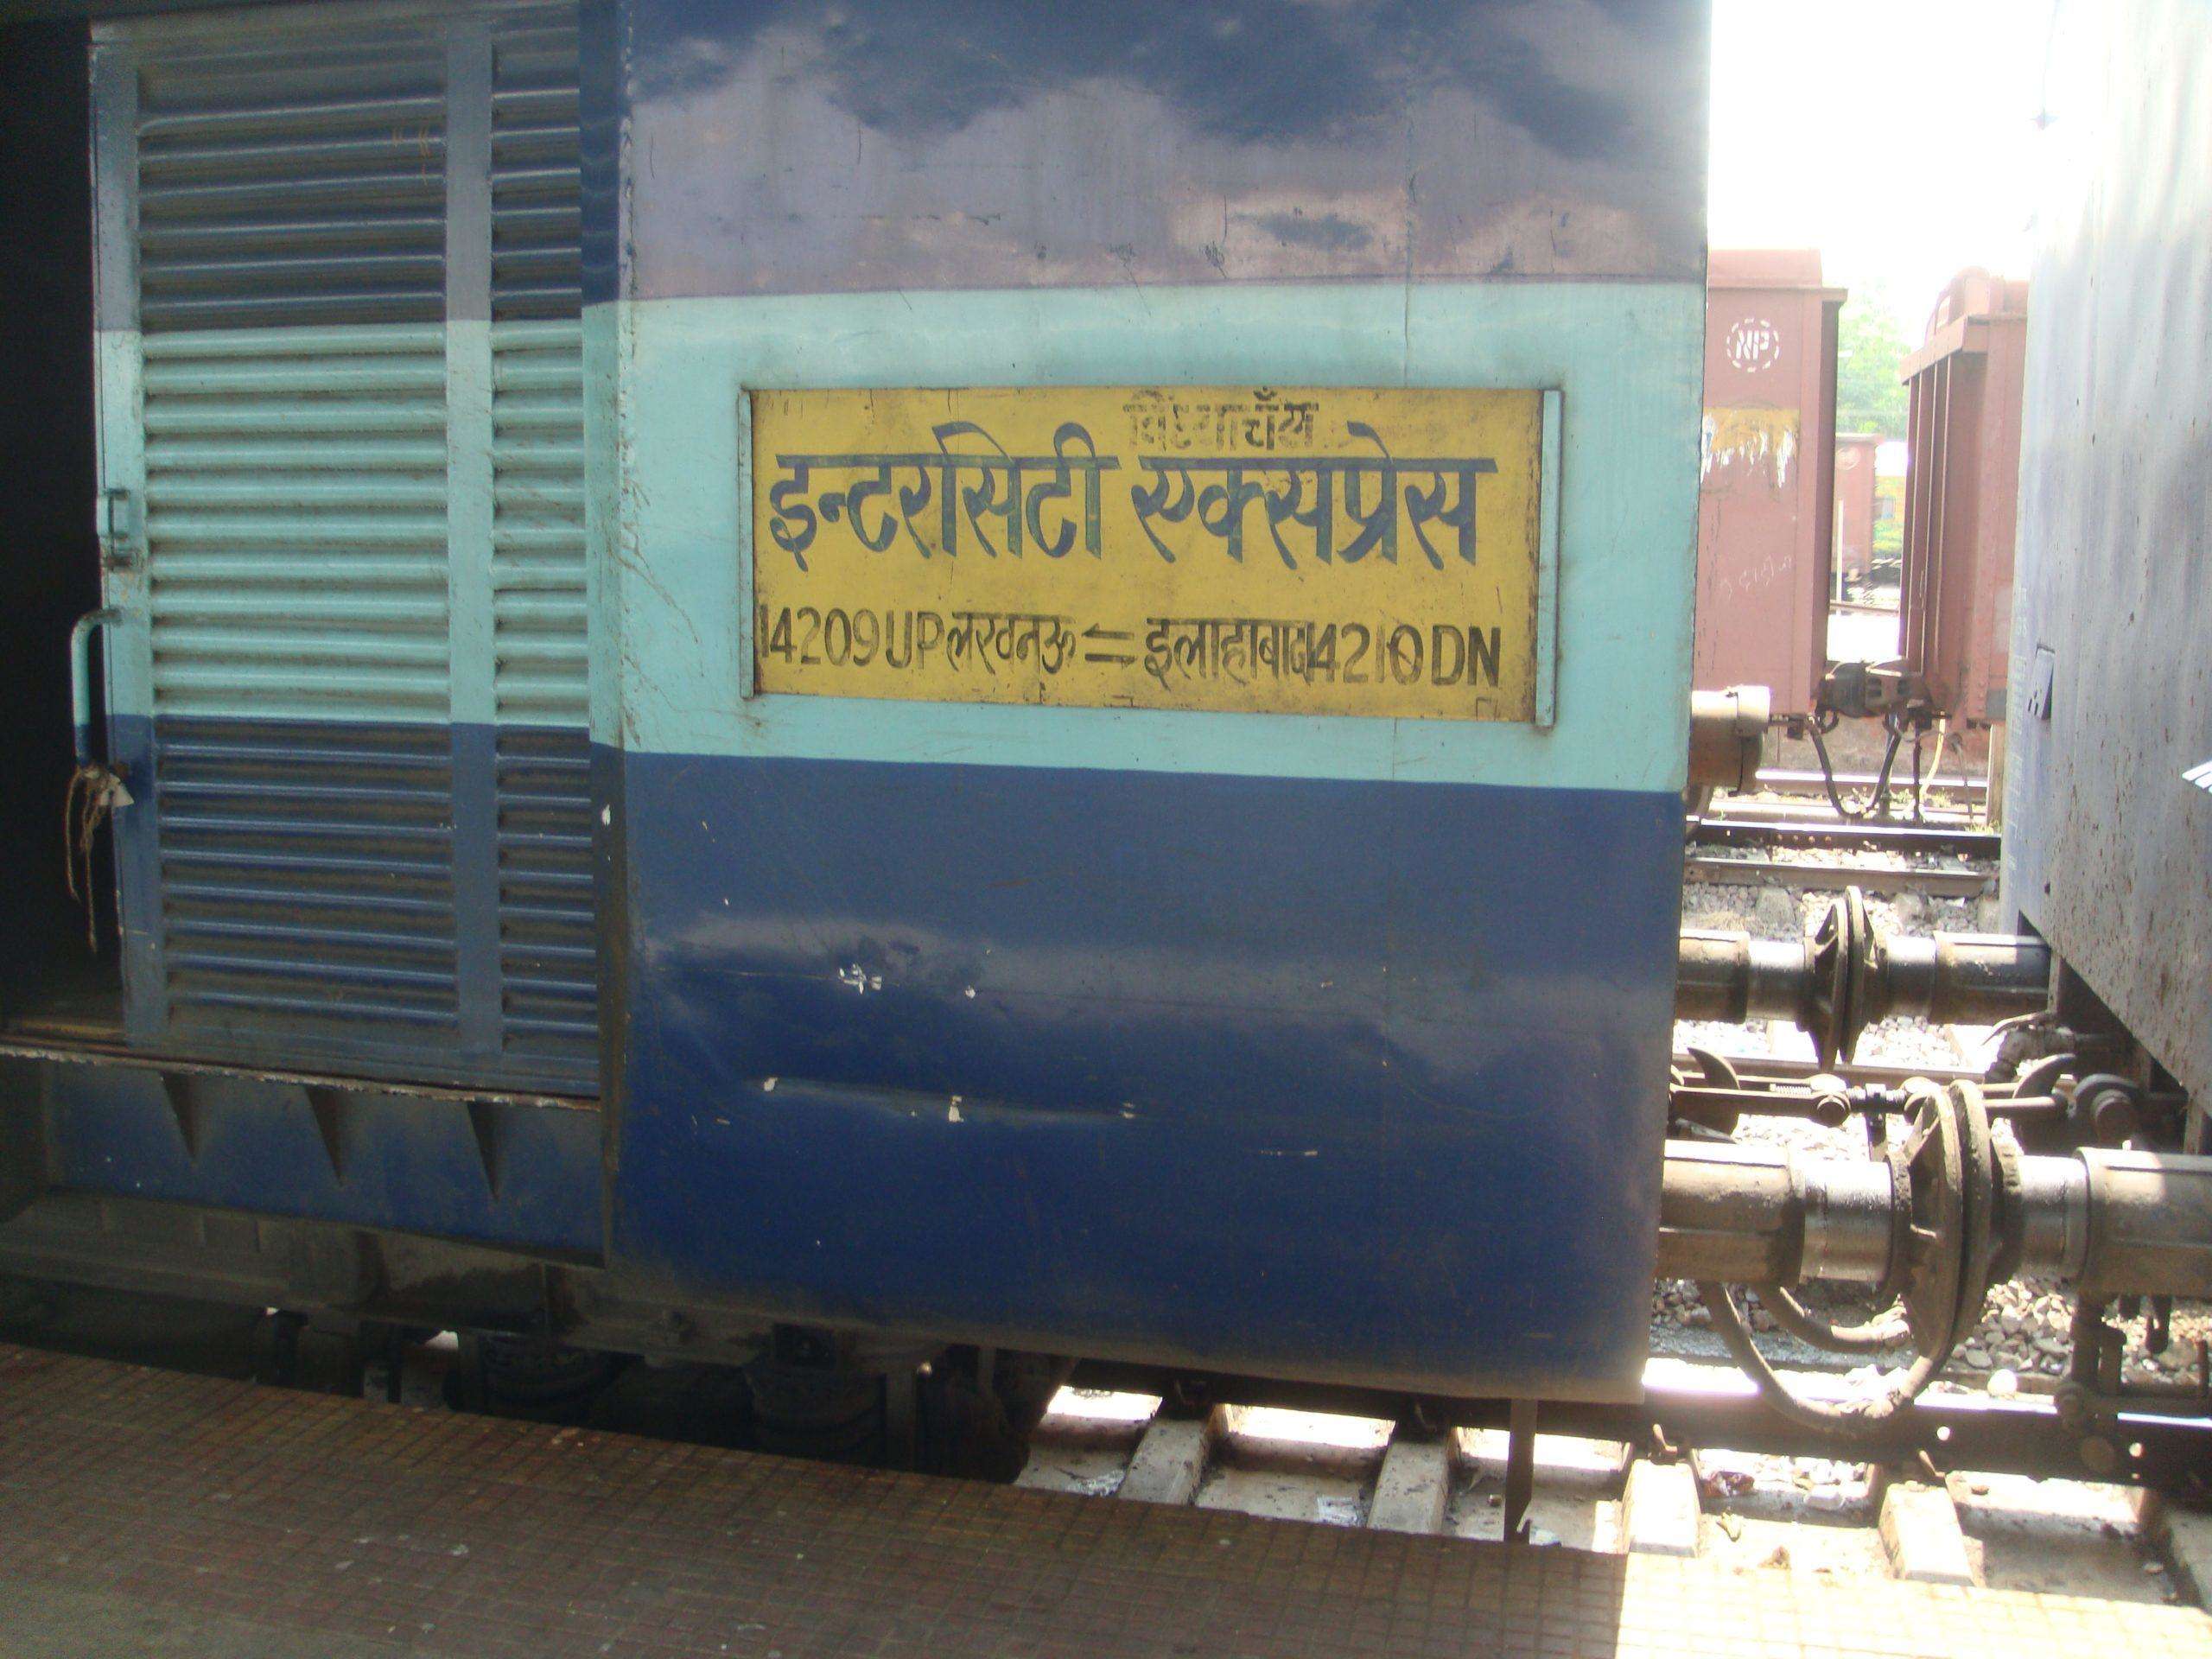 Railway: इंटरसिटी ट्रेन में रिजर्वेशन के बिना नहीं कर पाएंगे यात्रा, रिजर्वेशन होगा जरूरी